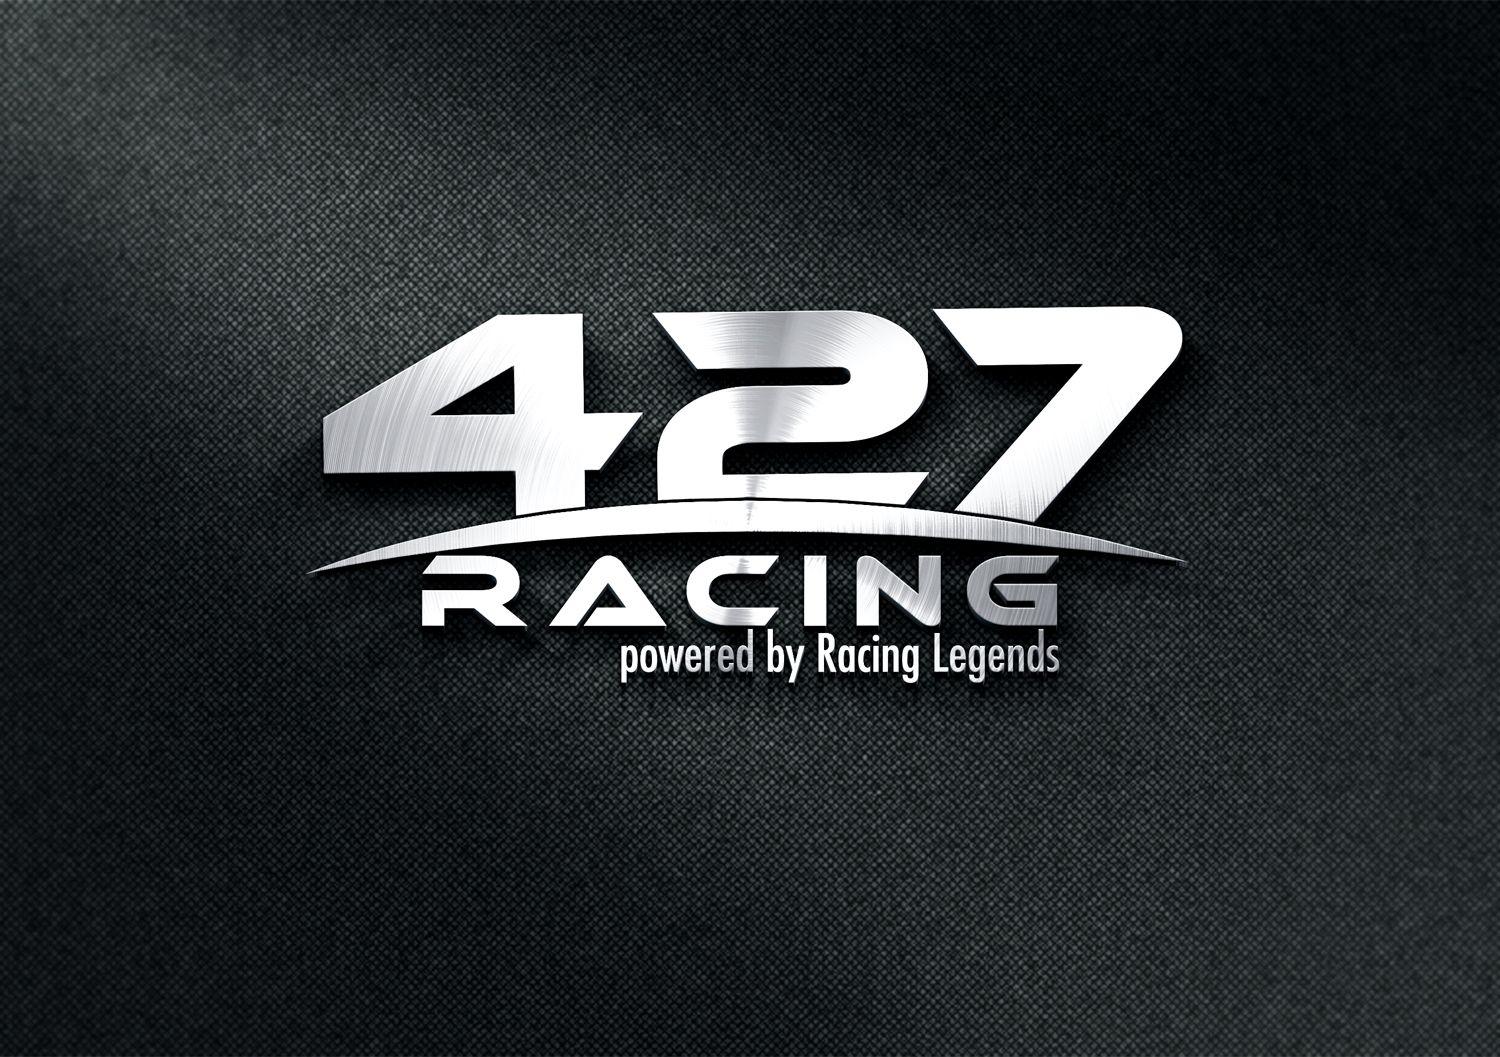 Lisa Rd Car Company Logo - Playful, Upmarket, Car Manufacturer Logo Design for 427 Engineering ...